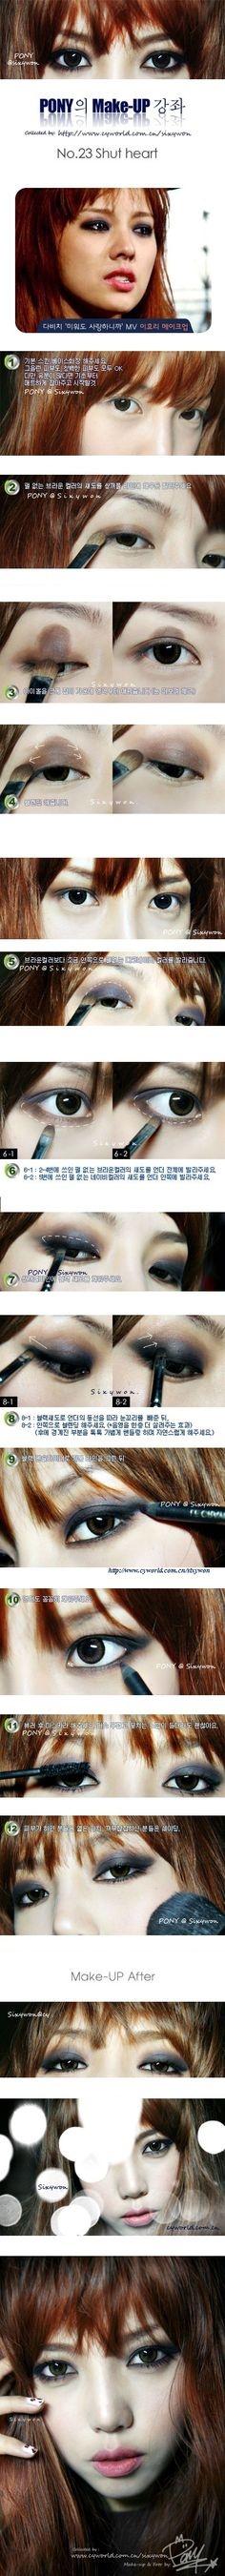 ulzzang-makeup-tutorial-by-pony-84_12 Ulzzang make-up les van pony